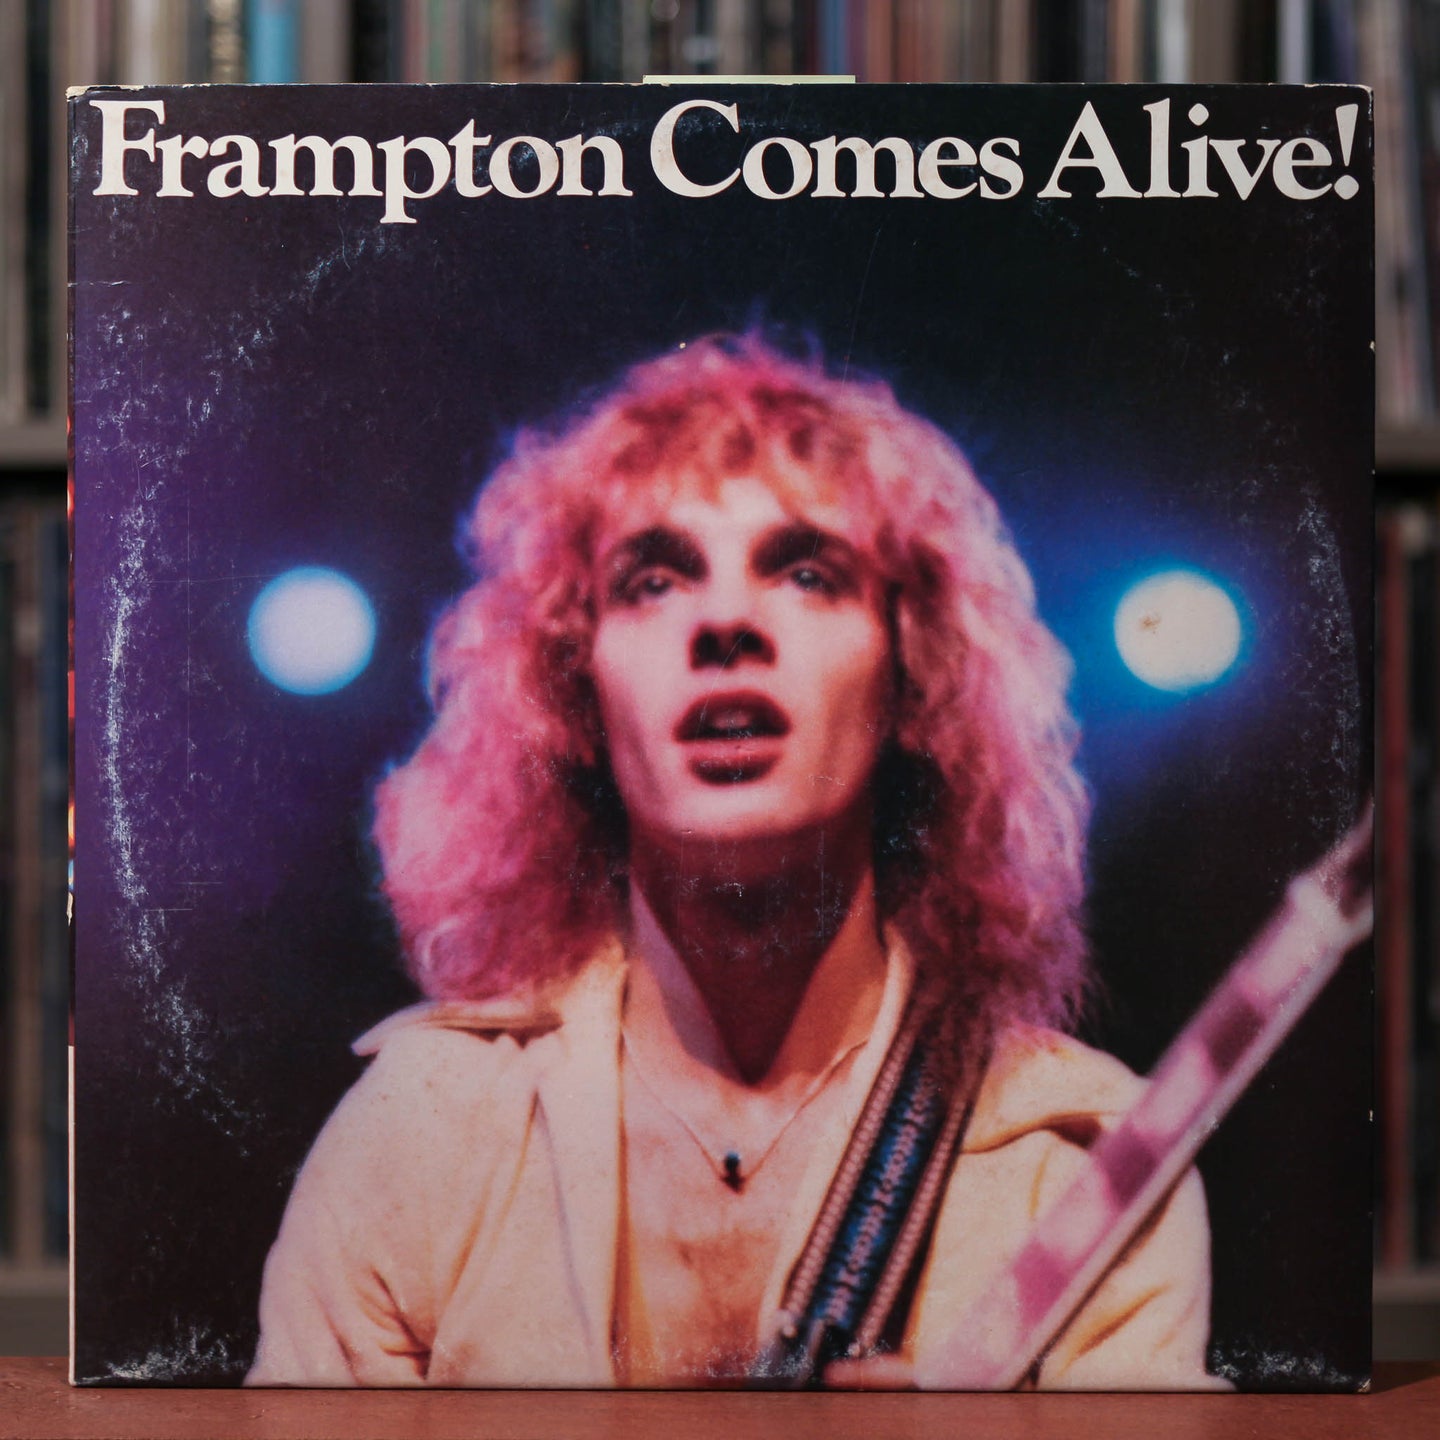 Peter Frampton - Frampton Comes Alive! - 2LP - 1976 A&M, VG+/VG+